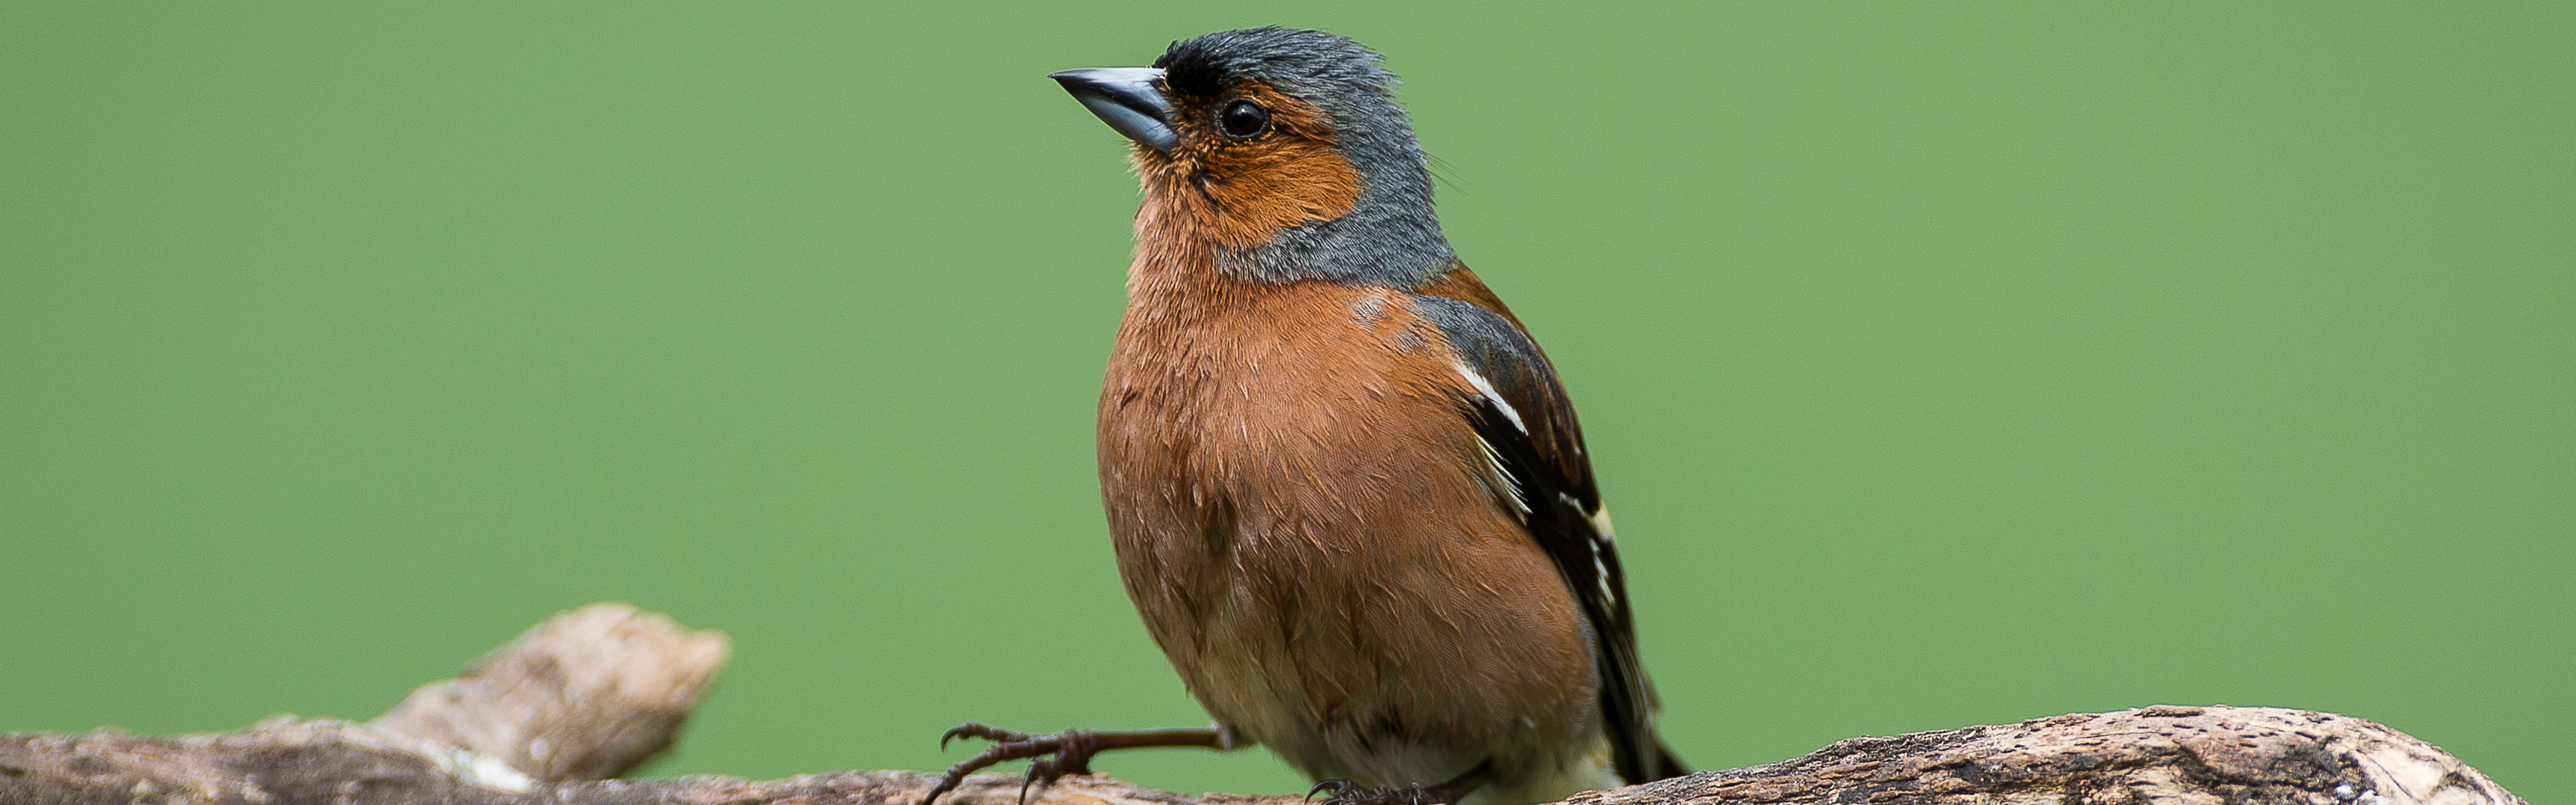 Lintujen pesimäkausi on käynnistynyt, ja nyt tehtävät hakkuut uhkaavat  poikasten selviytymistä – WWF vaatii muutosta luonnonsuojelulakiin – WWF  Suomi